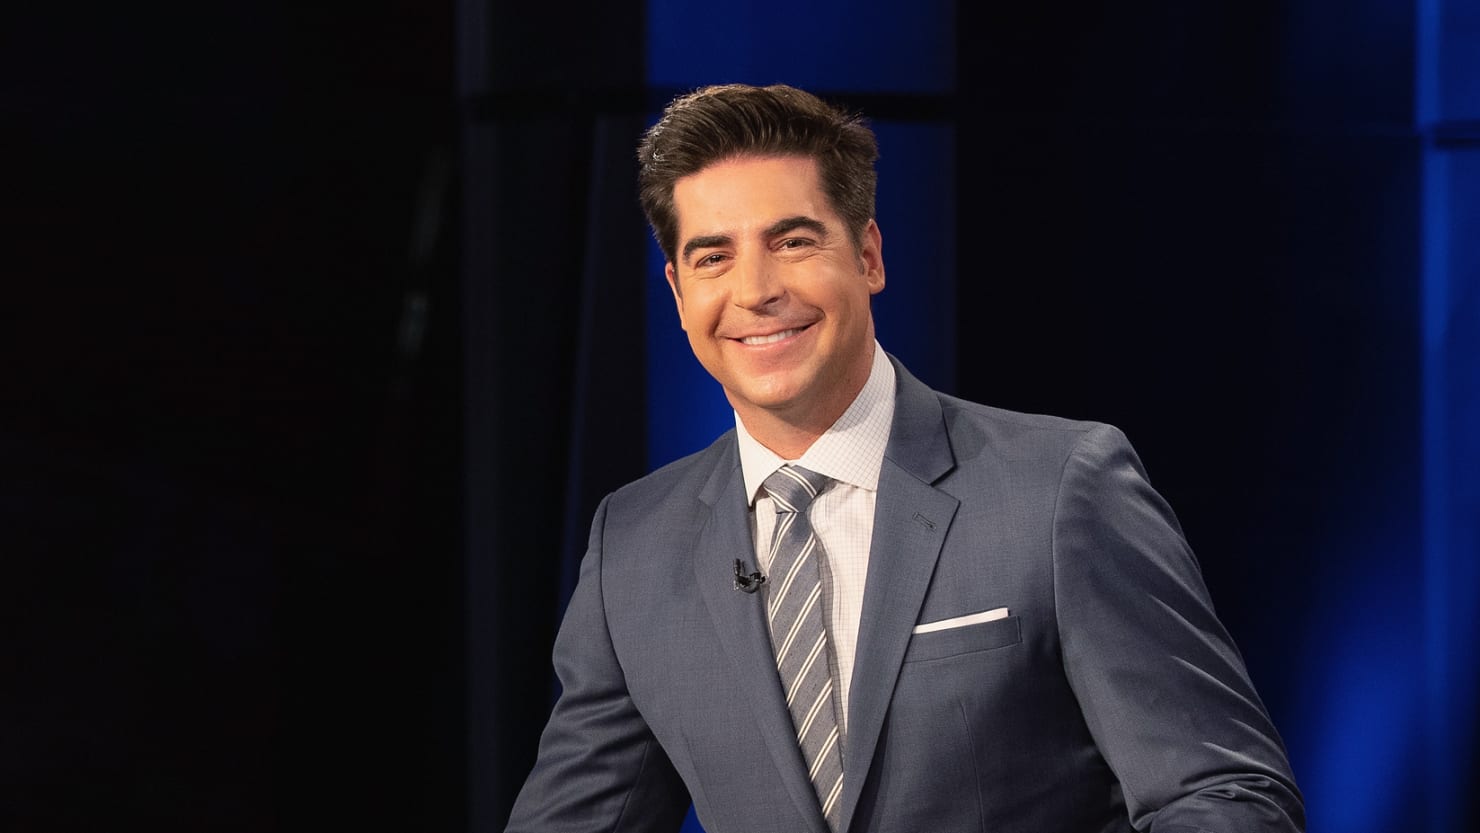 Fox News nombra a Jesse Watters como presentador permanente de ‘Fox News Primetime’